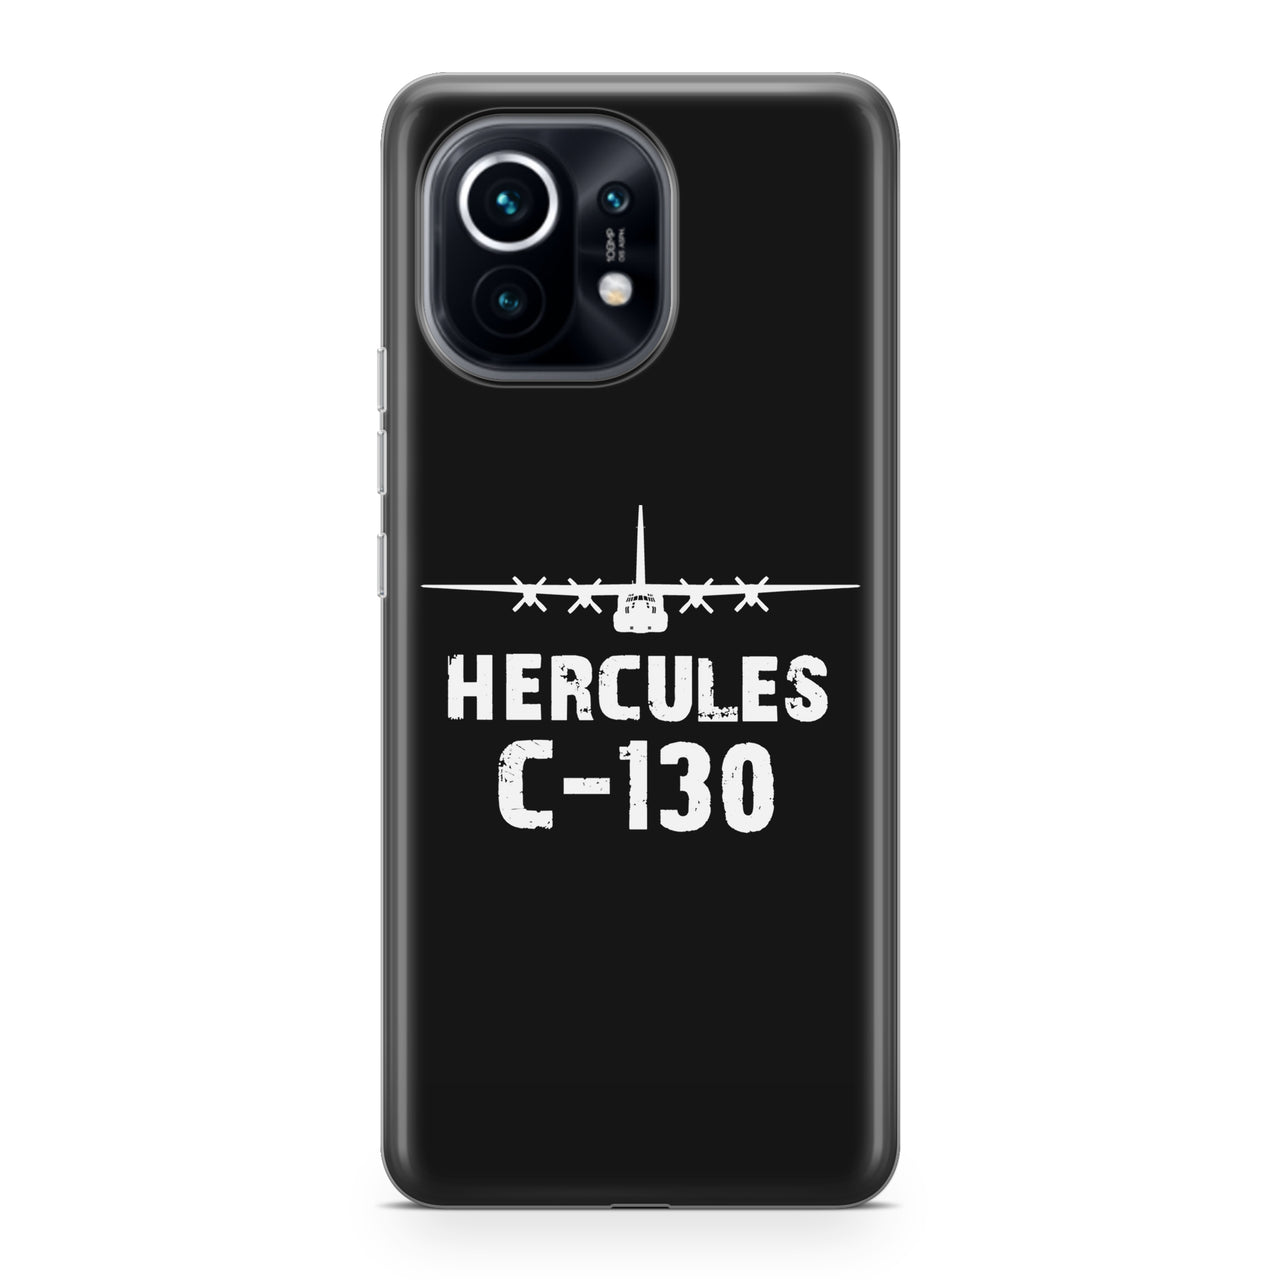 Hercules C-130 & Plane Designed Xiaomi Cases